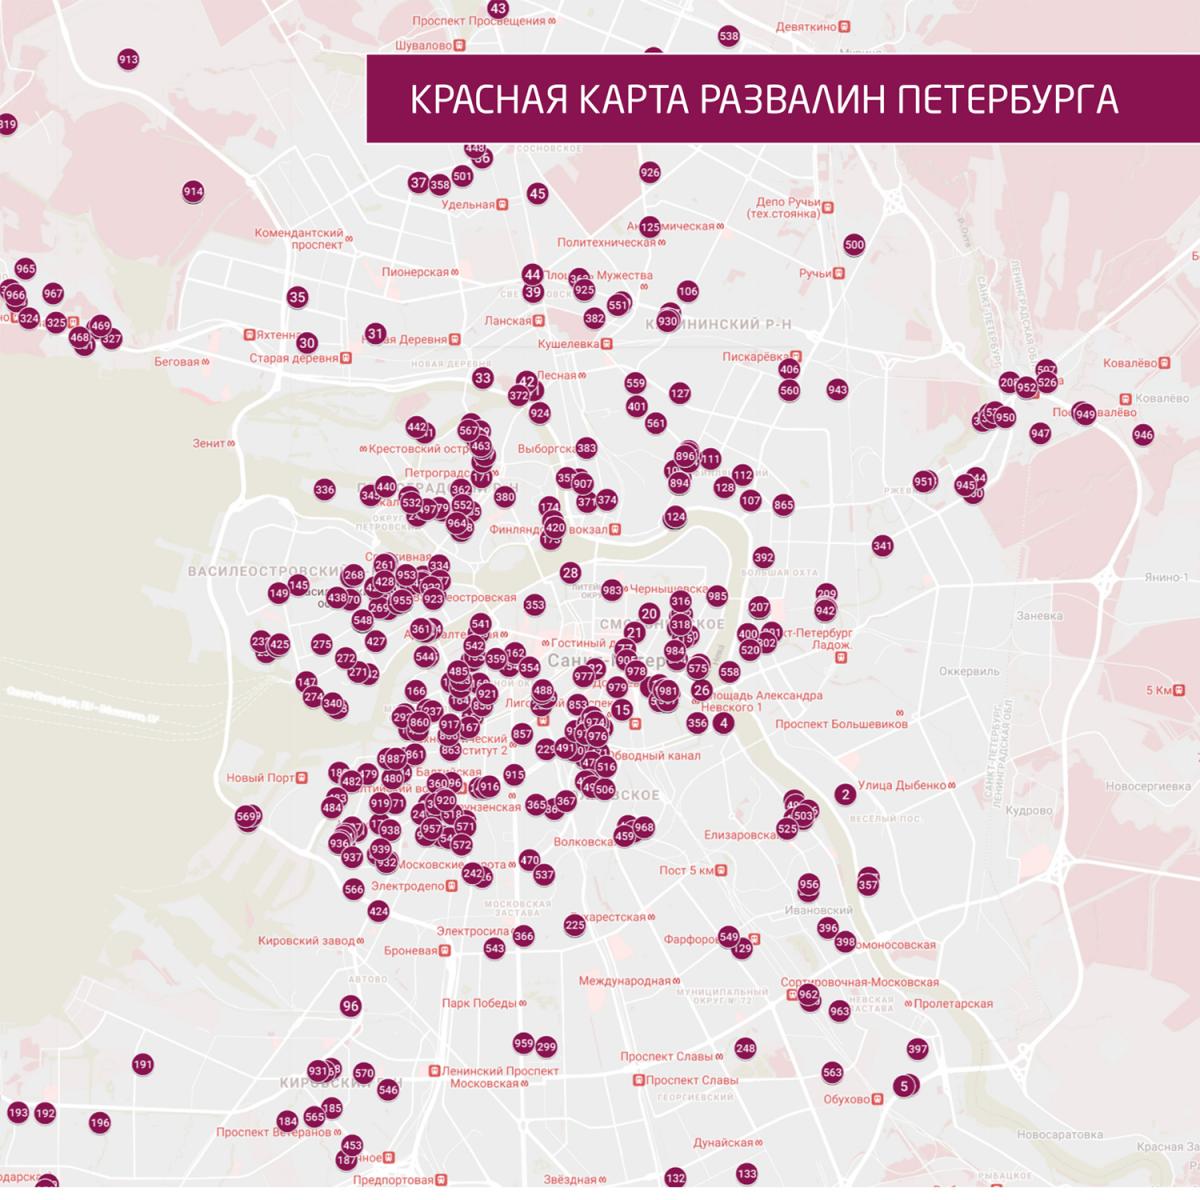 Для спасения памятников архитектуры в Санкт-Петербурге создали «карту городских развалин» - image 2